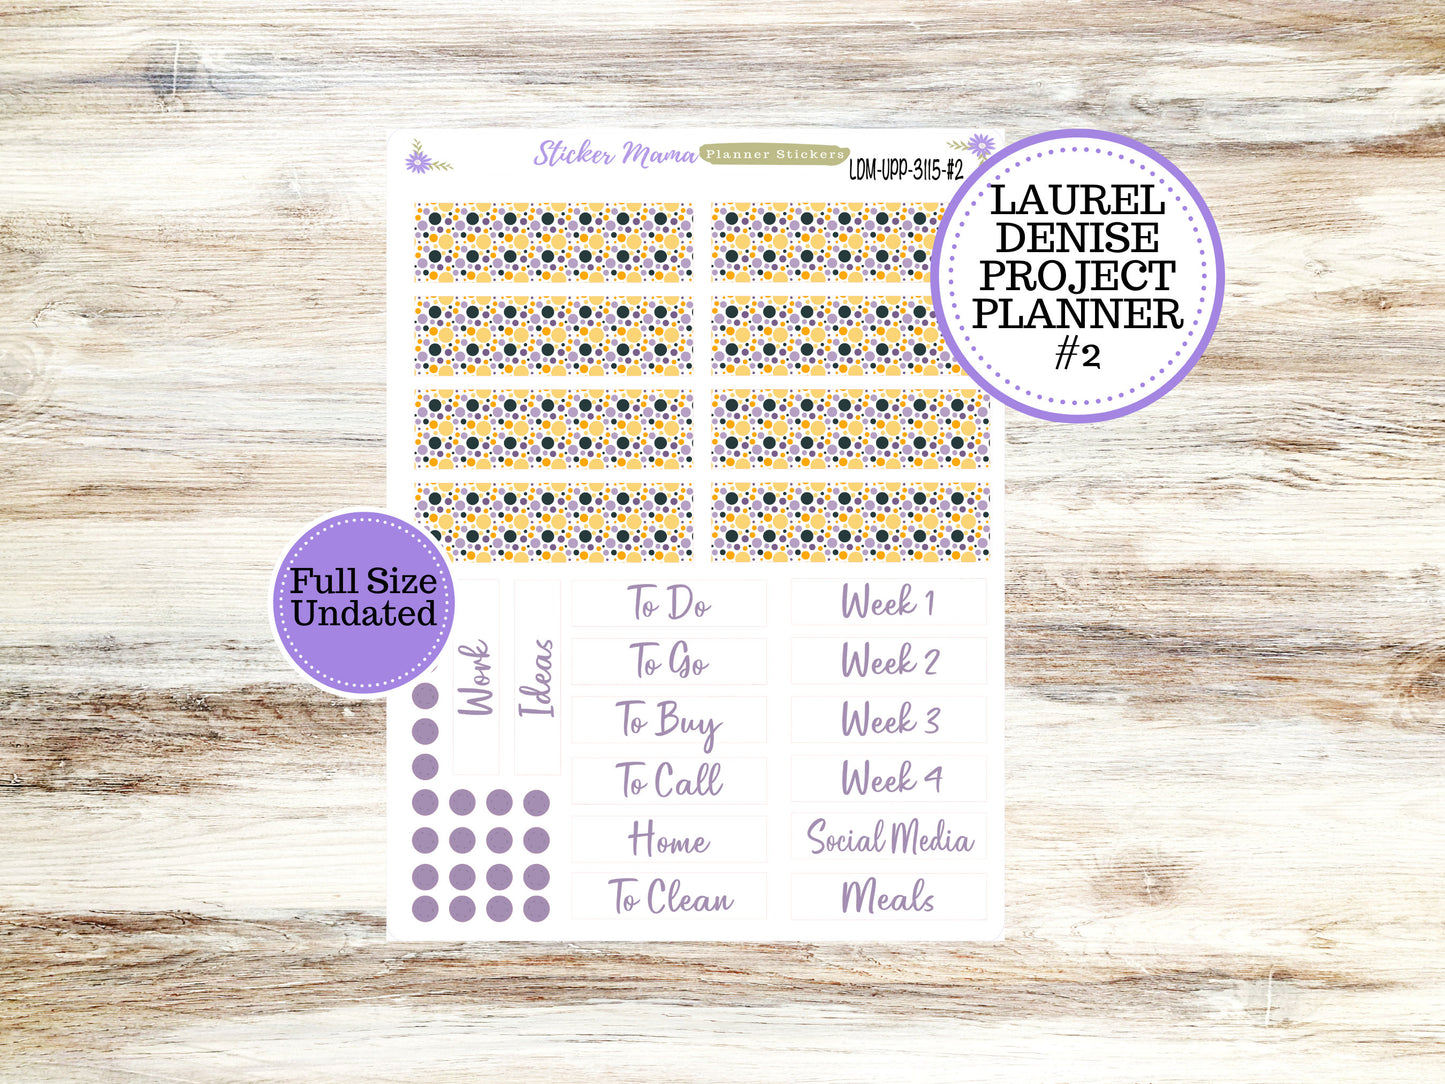 LAUREL DENISE PROJECT October Planner Kit #3115 || Spooky Palatte || Laurel Denise Kit || Laurel Denise Stickers ||  || October ld